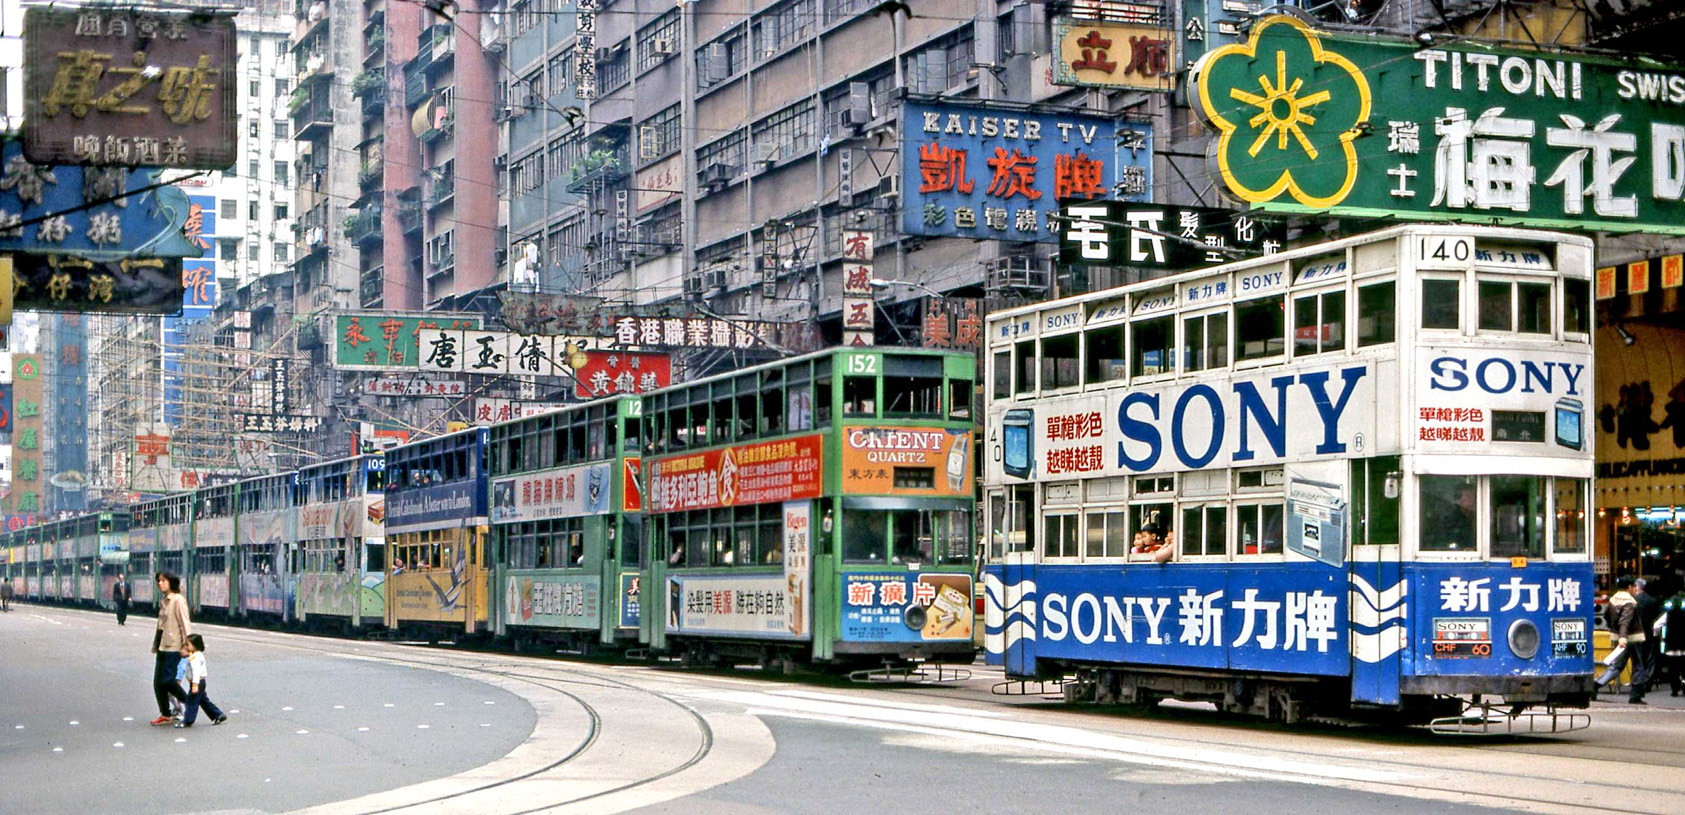 Гонконг, Hong Kong Tramways VI № 140; Гонконг — Городской трамвай — Старые фотографии; Гонконг — Городской трамвай — Разные фотографии